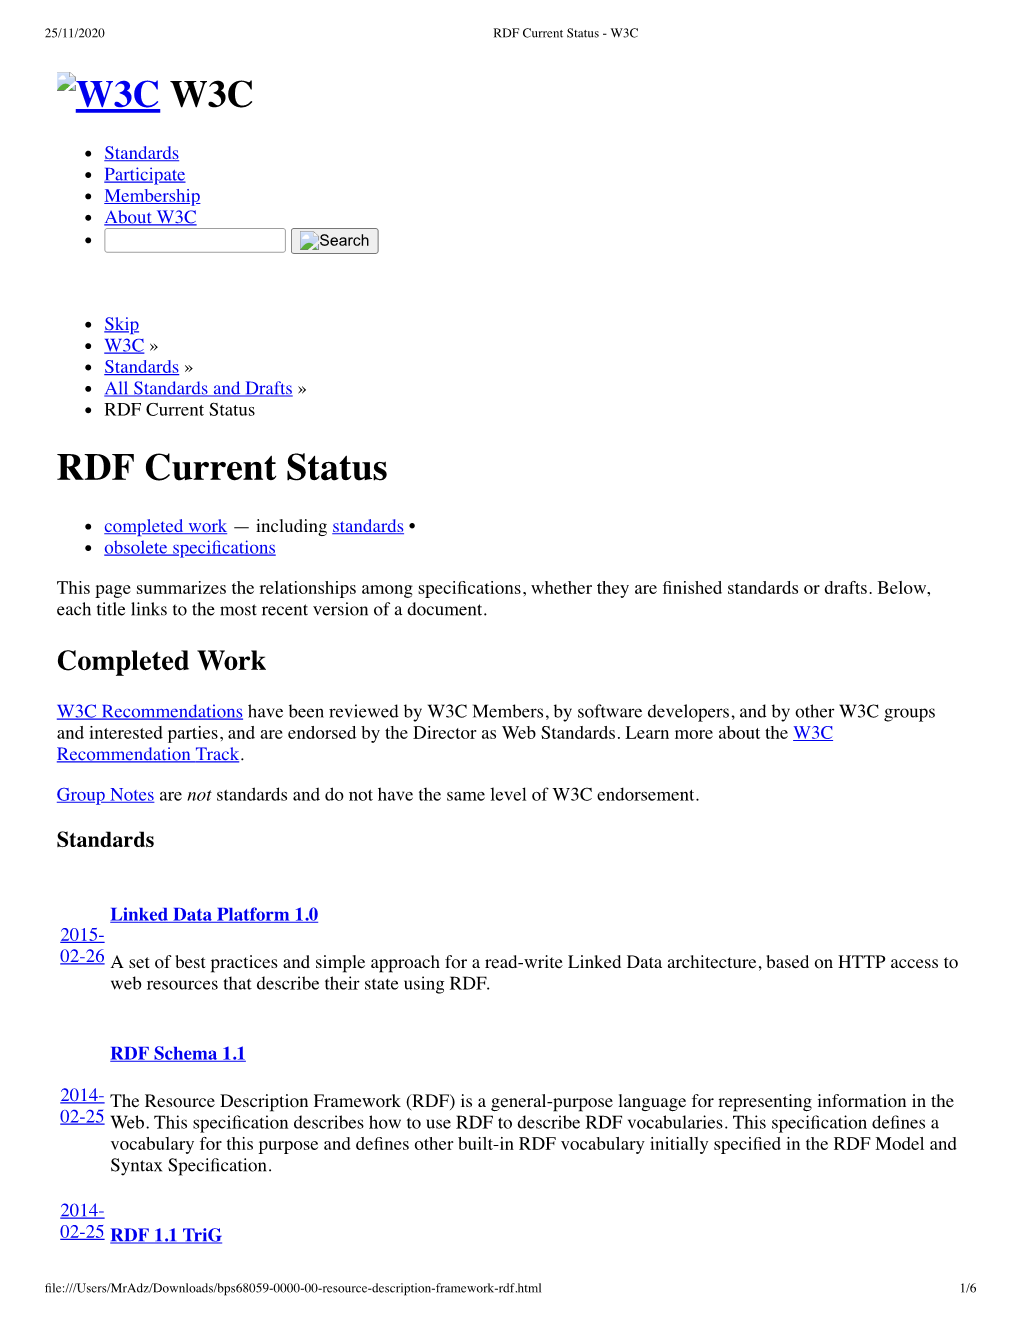 W3C W3C RDF Current Status